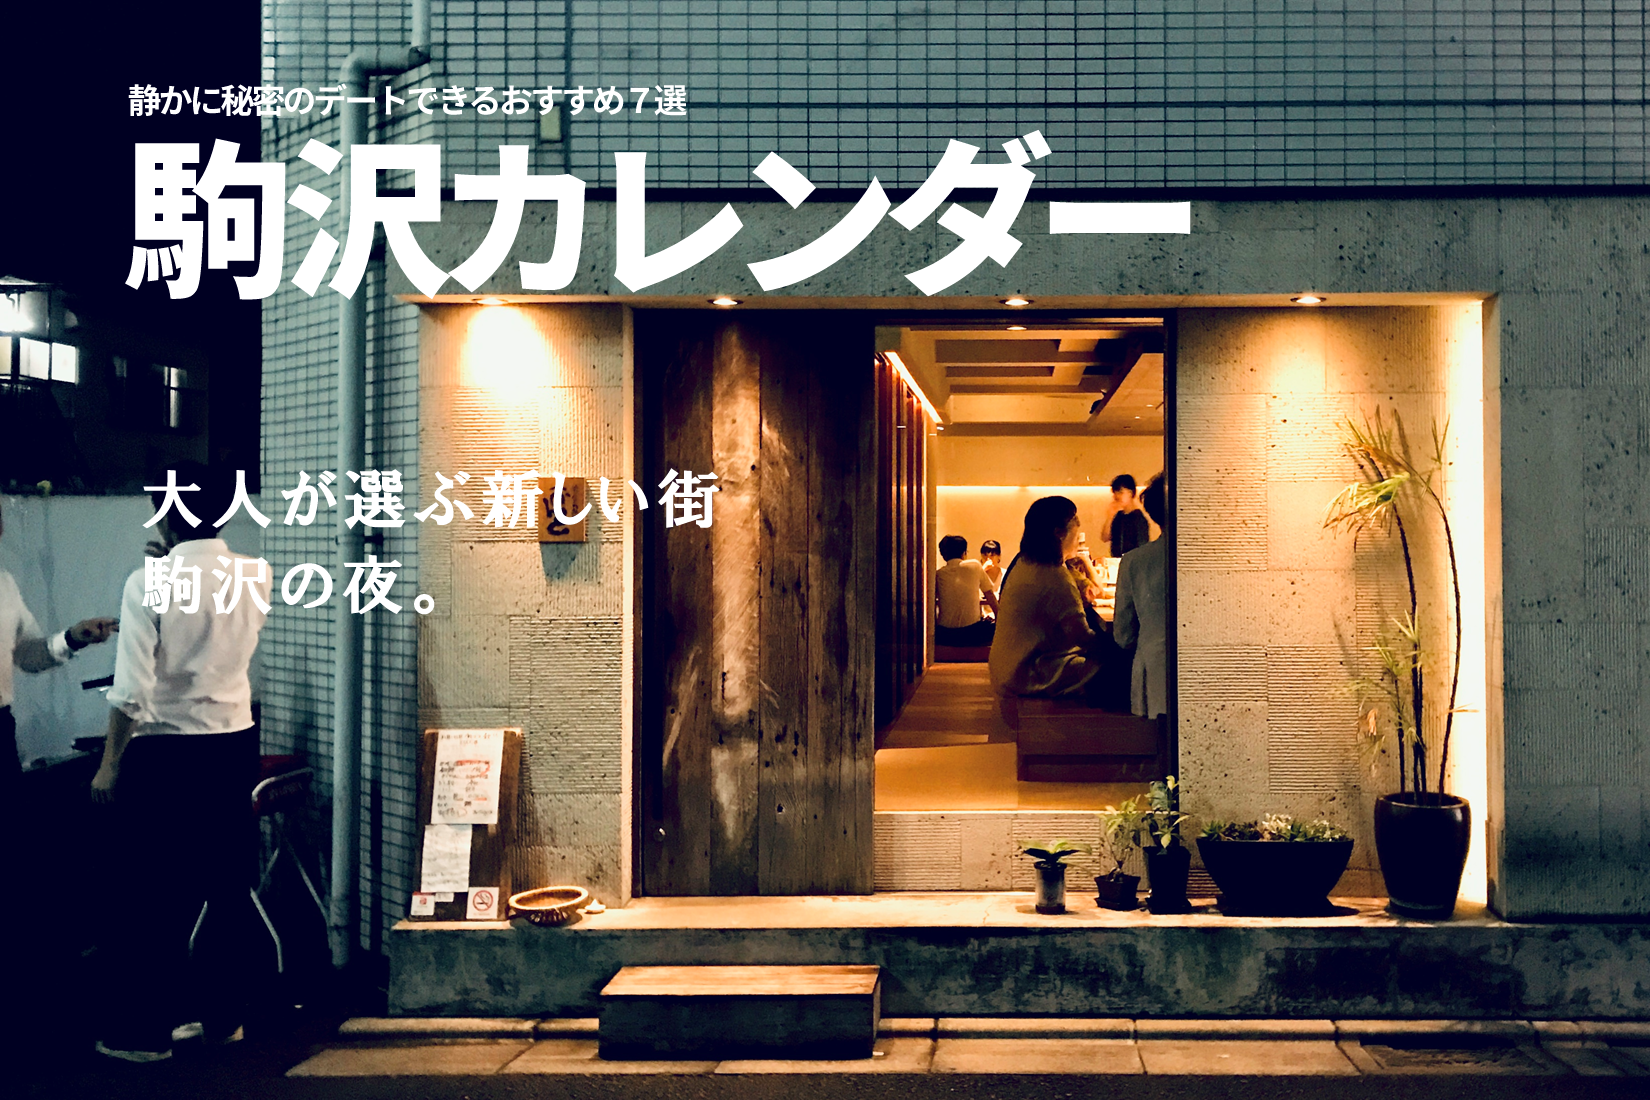 三宿より遭遇率低い 大人デート向きな街 駒沢大学駅 三軒茶屋を抜けた先で静かに秘密のデートできるおすすめ７選 個室もあり 三茶散歩